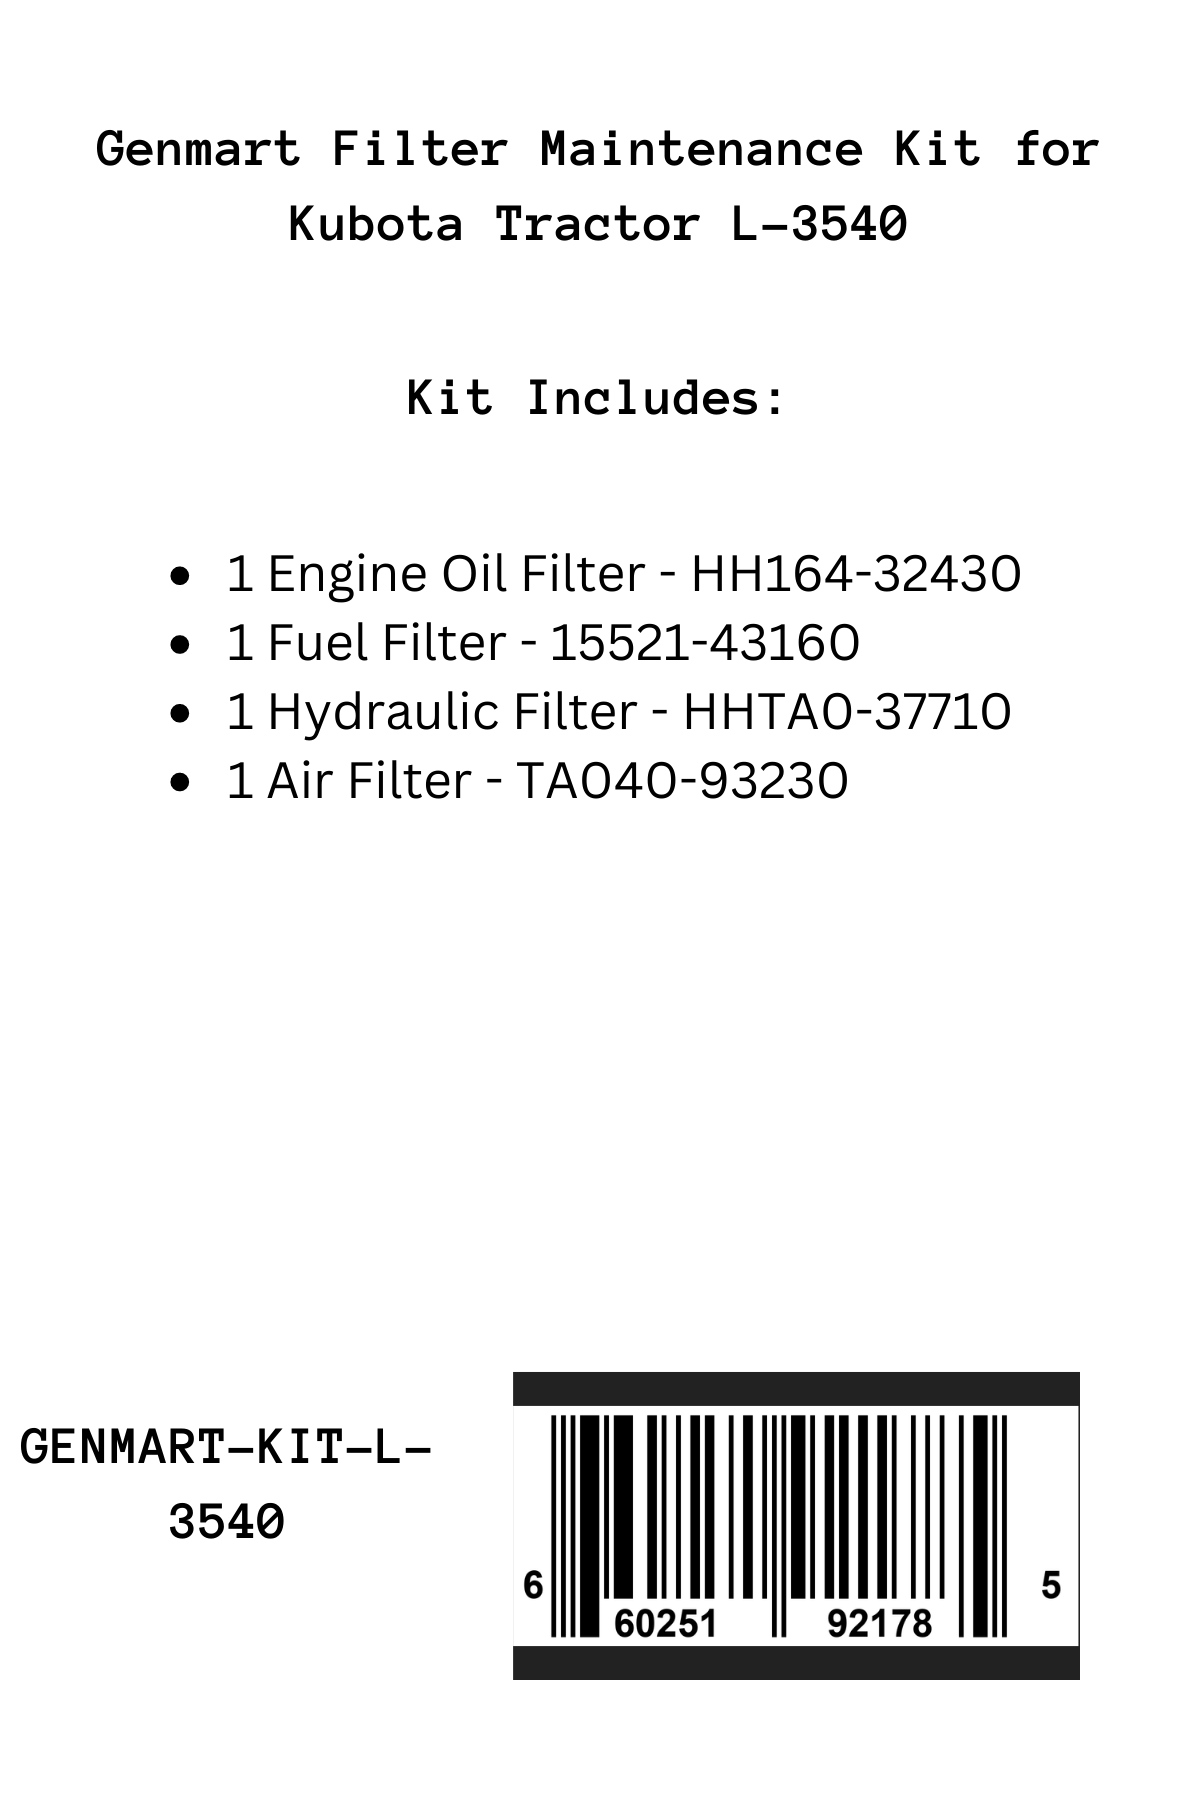 Genmart Maintenance Kit for Kubota Tractor L-3540